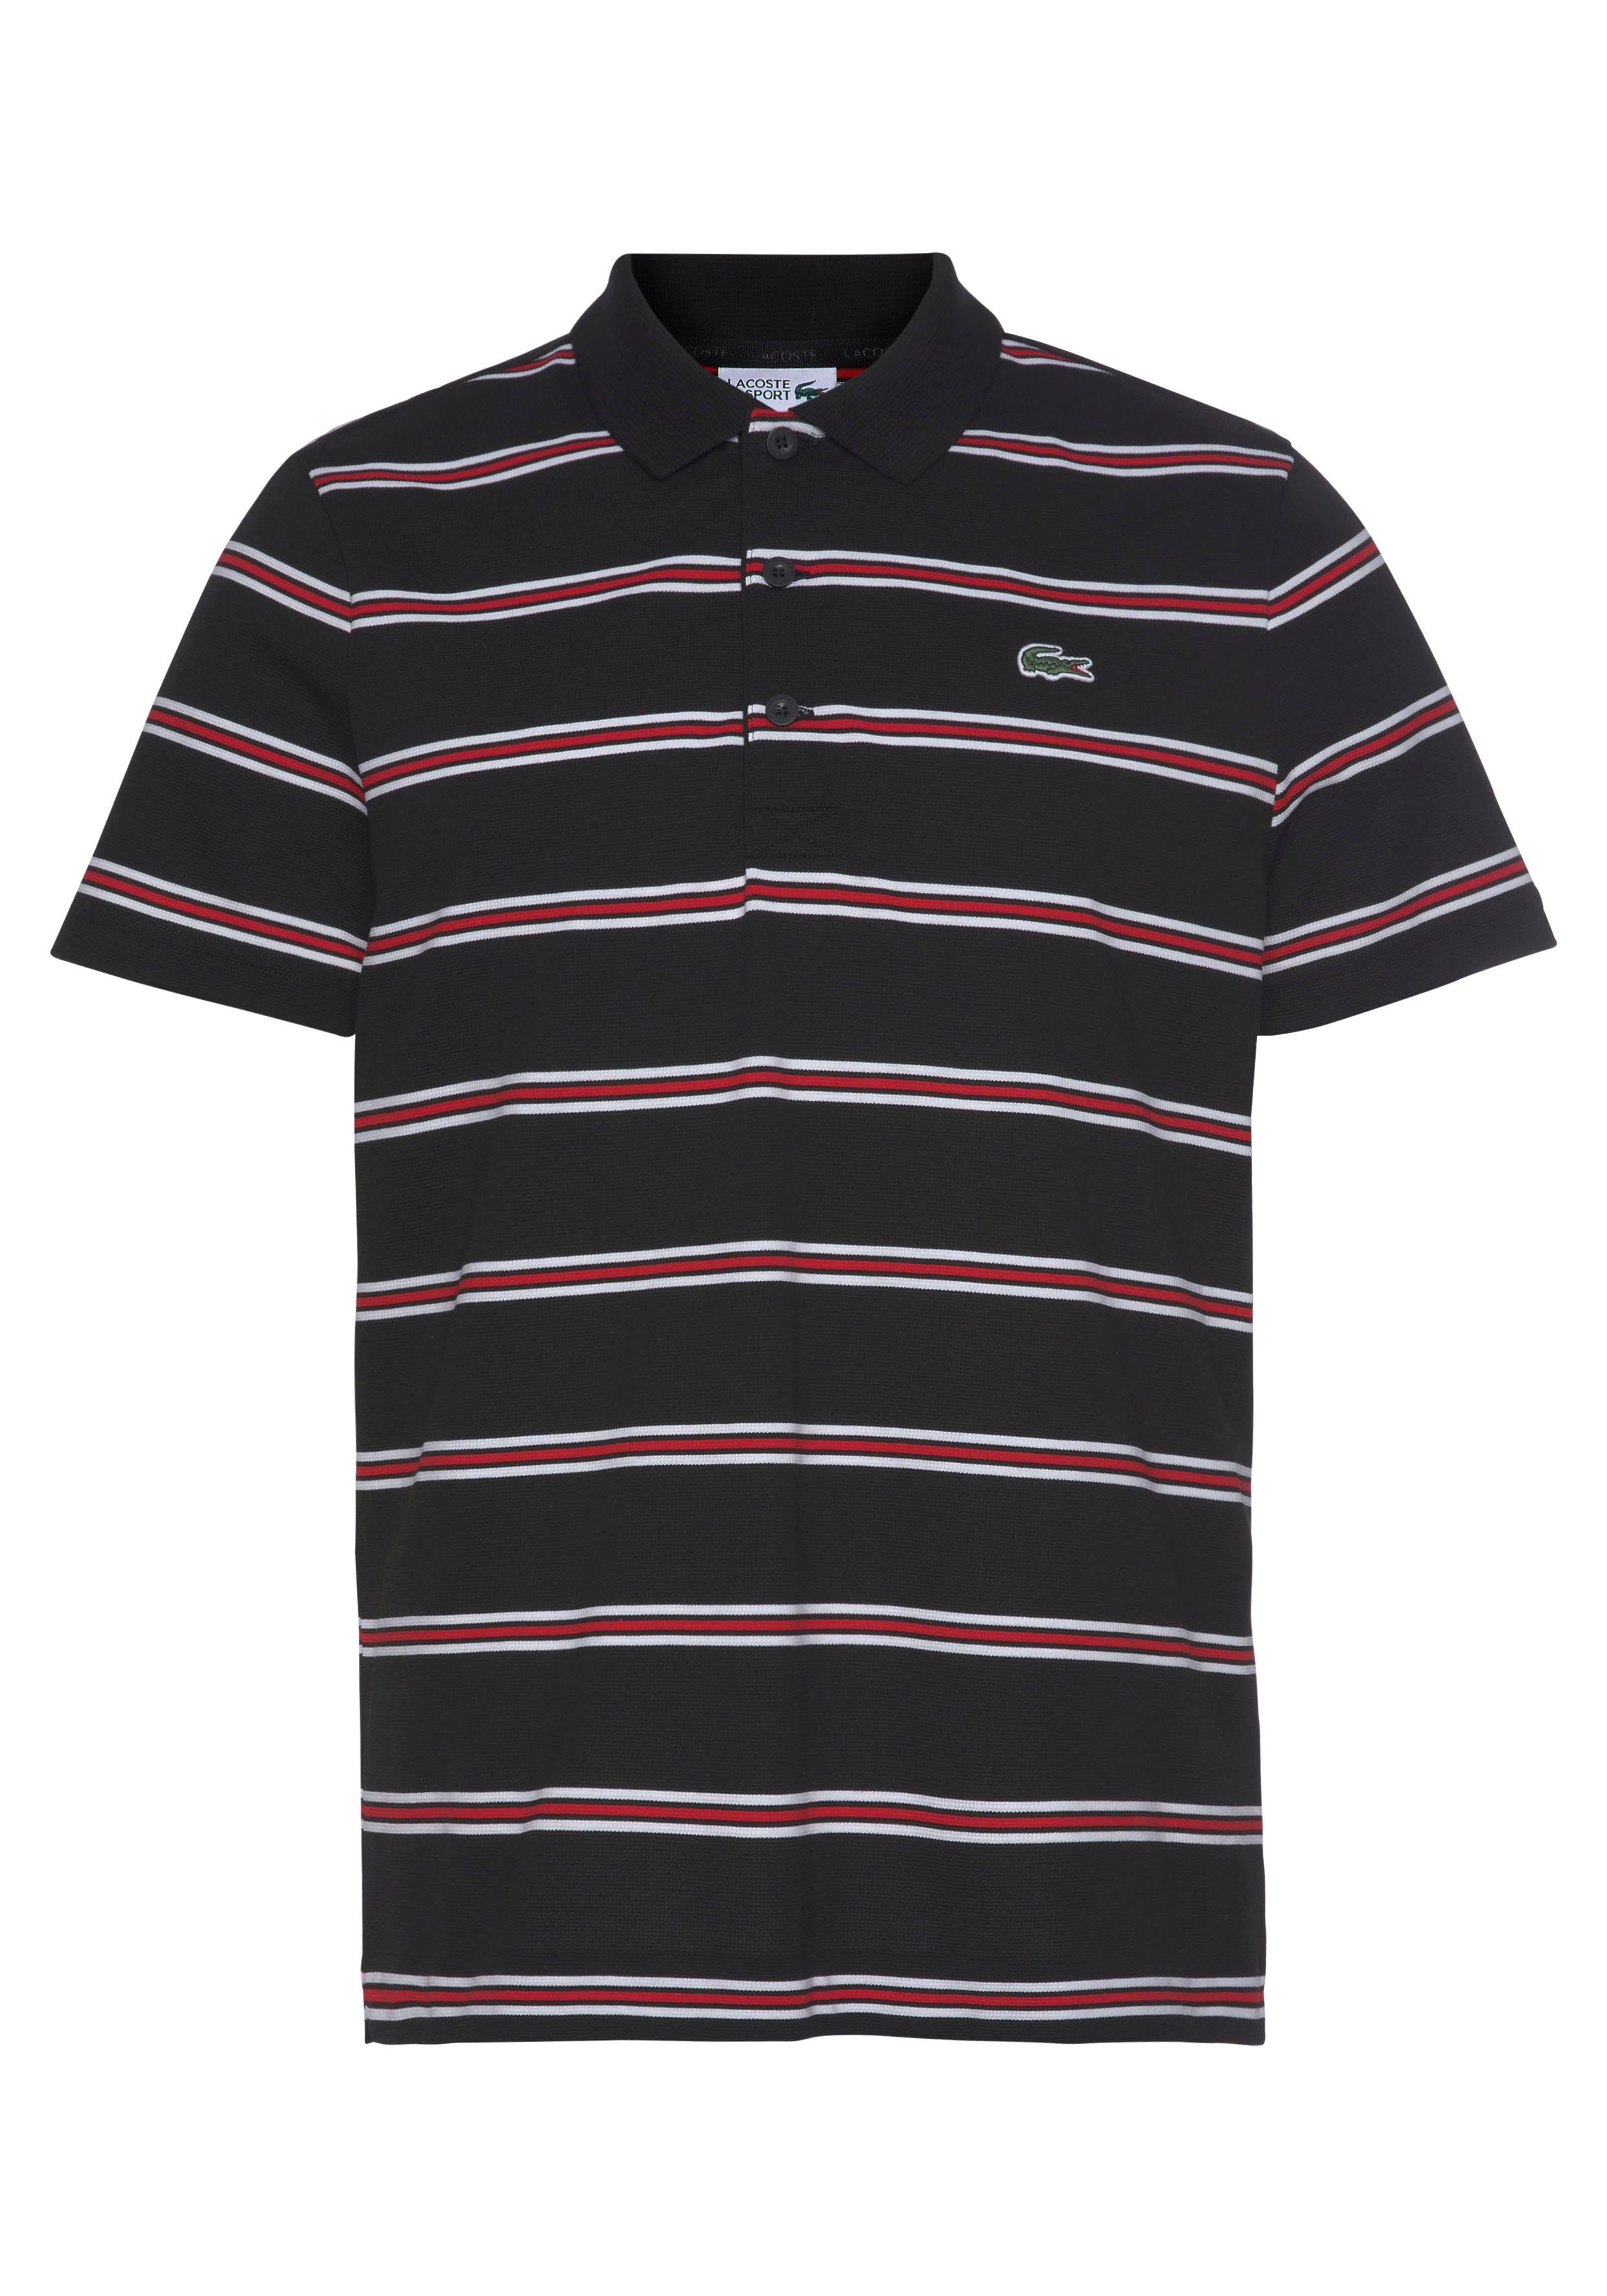 Lacoste Poloshirt Mit mehrfarbigen Streifen kaufen | OTTO